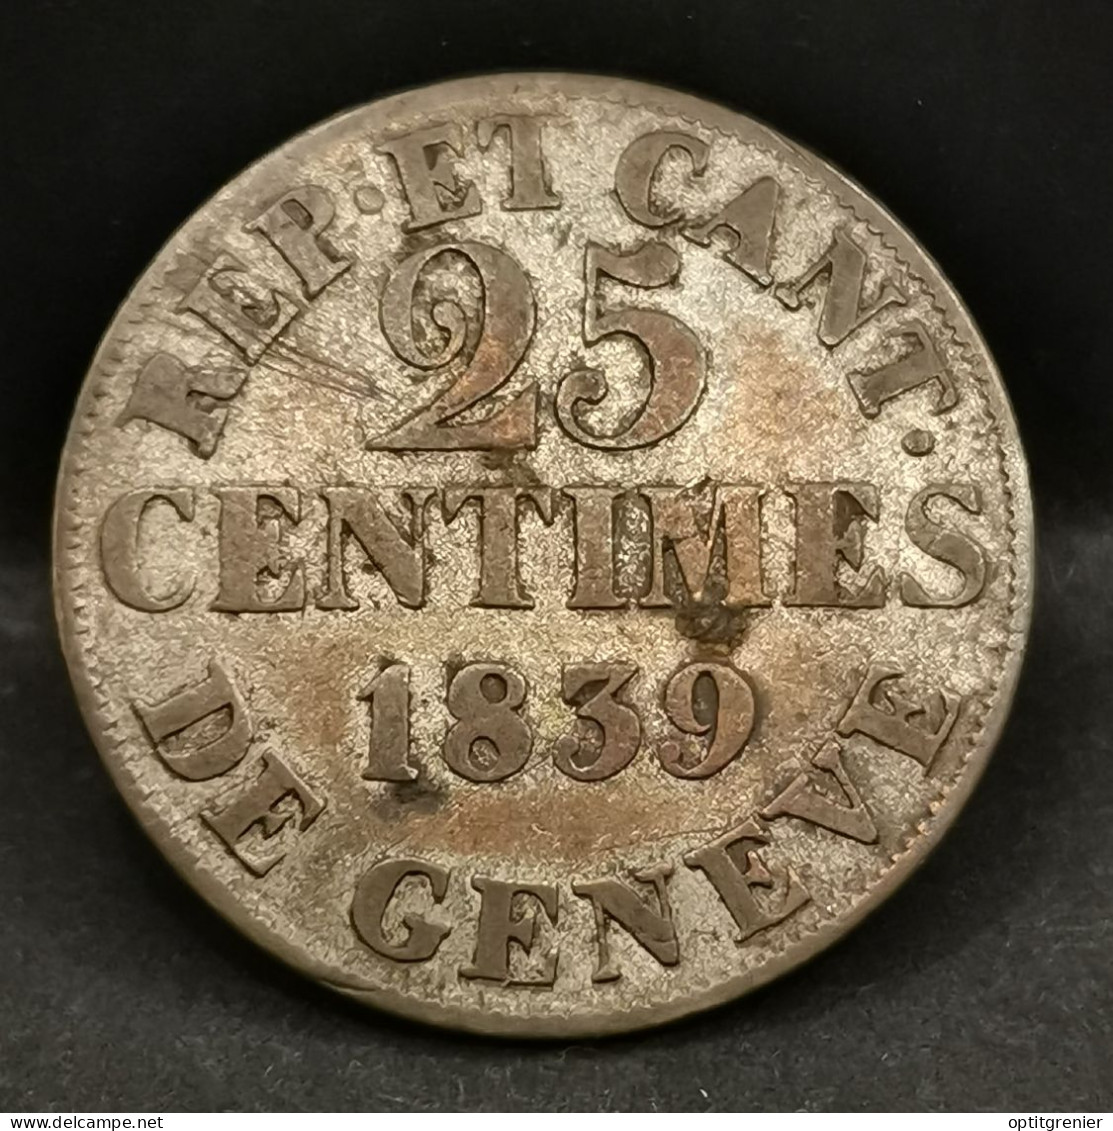 25 CENTIMES 1839 BILLON ARGENT CANTON DE GENEVE SUISSE / SWITZERLAND - Cantonal Coins